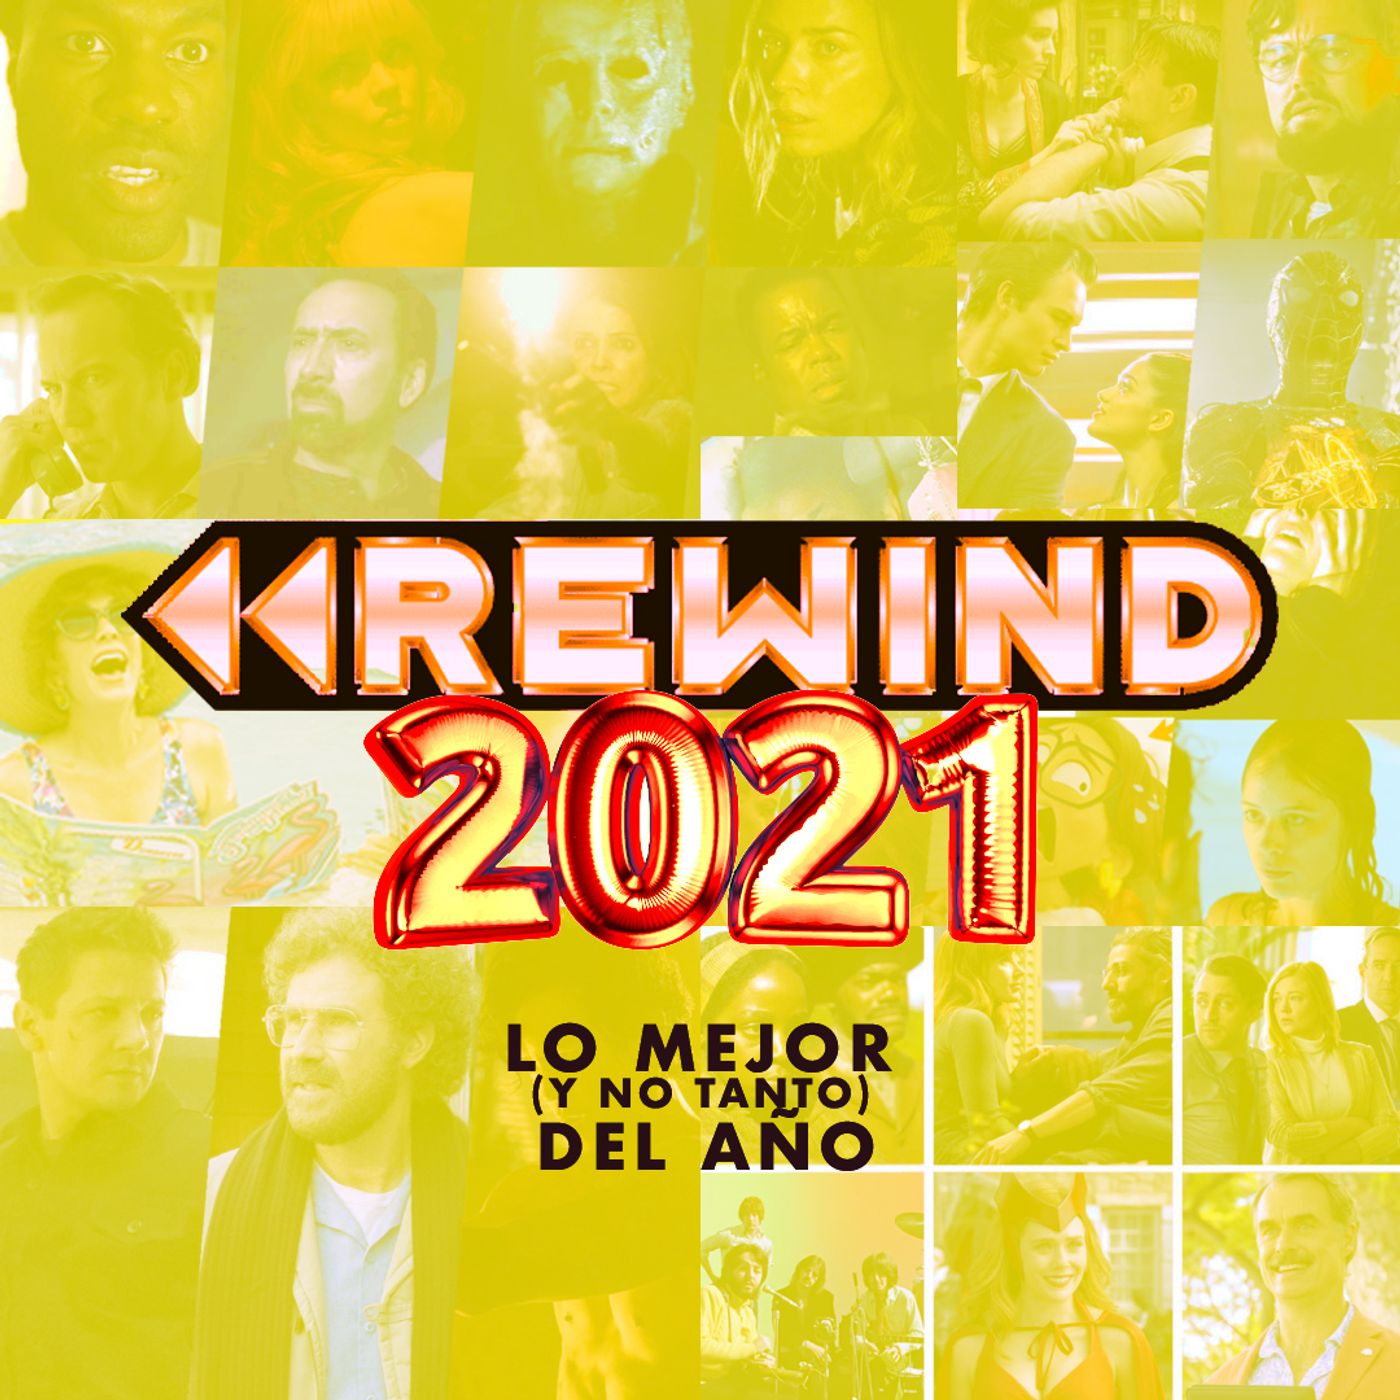 287: "Rewind 2021"